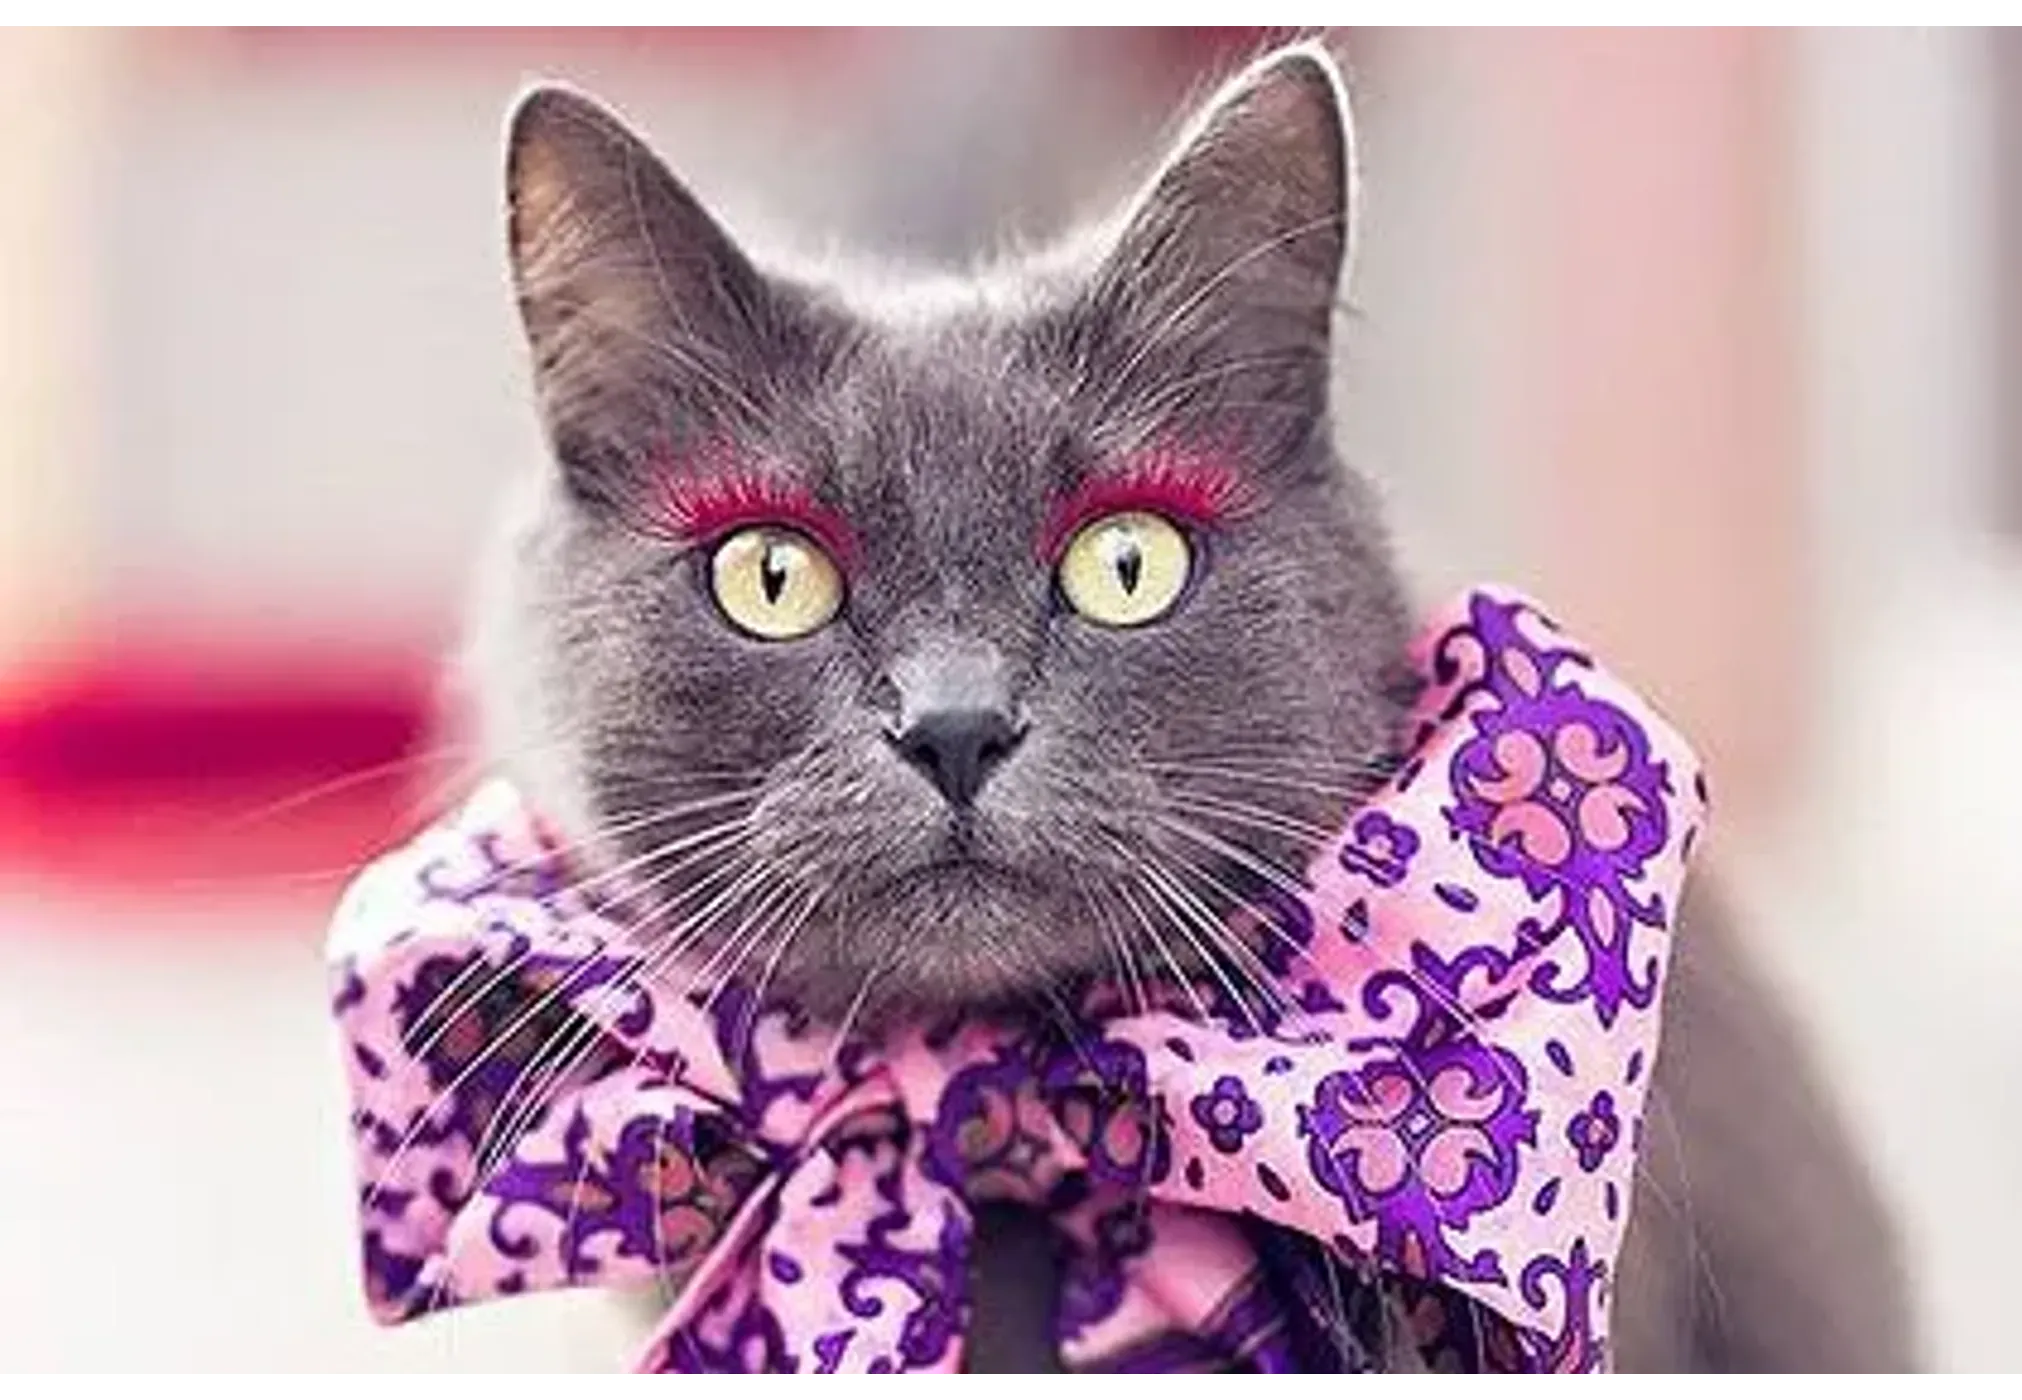 Гламурная киса: в Instagram набирает популярность аккаунт с фото накрашенной  кошки